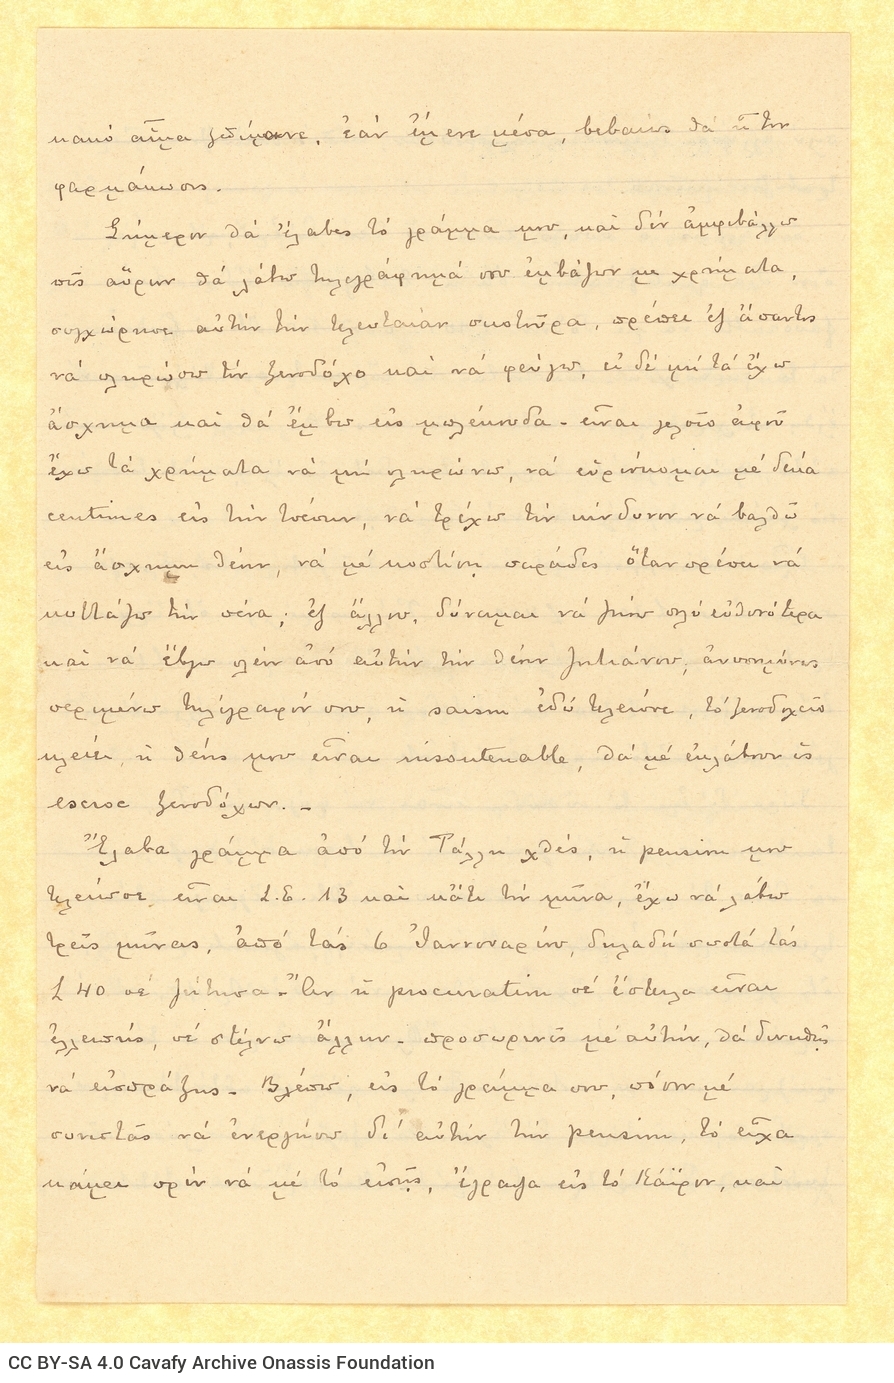 Χειρόγραφη επιστολή ημερολογιακού χαρακτήρα του Παύλου Καβάφη προς